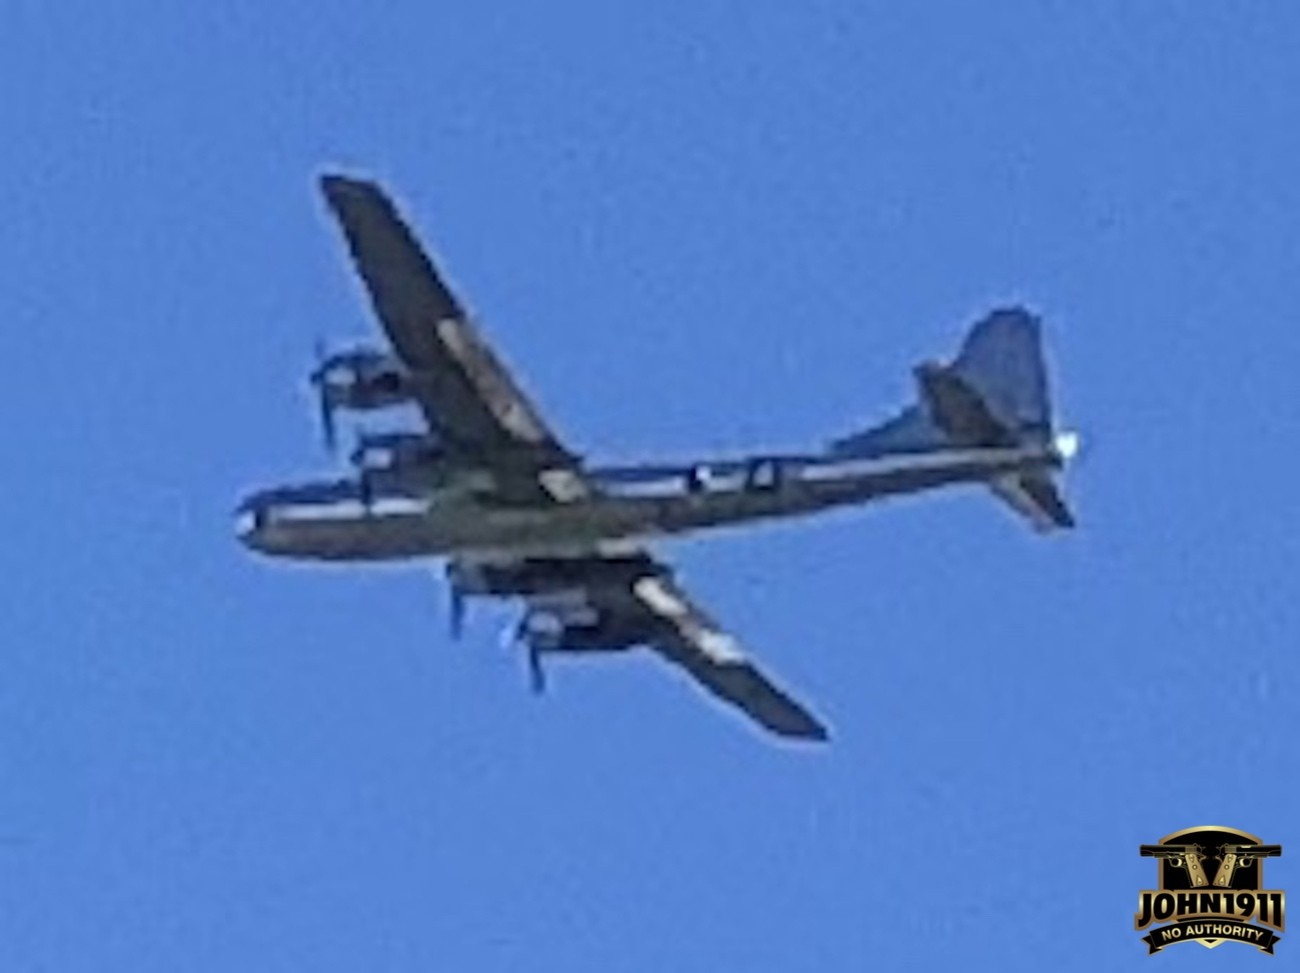 B-29 Bomber over John1911 Range